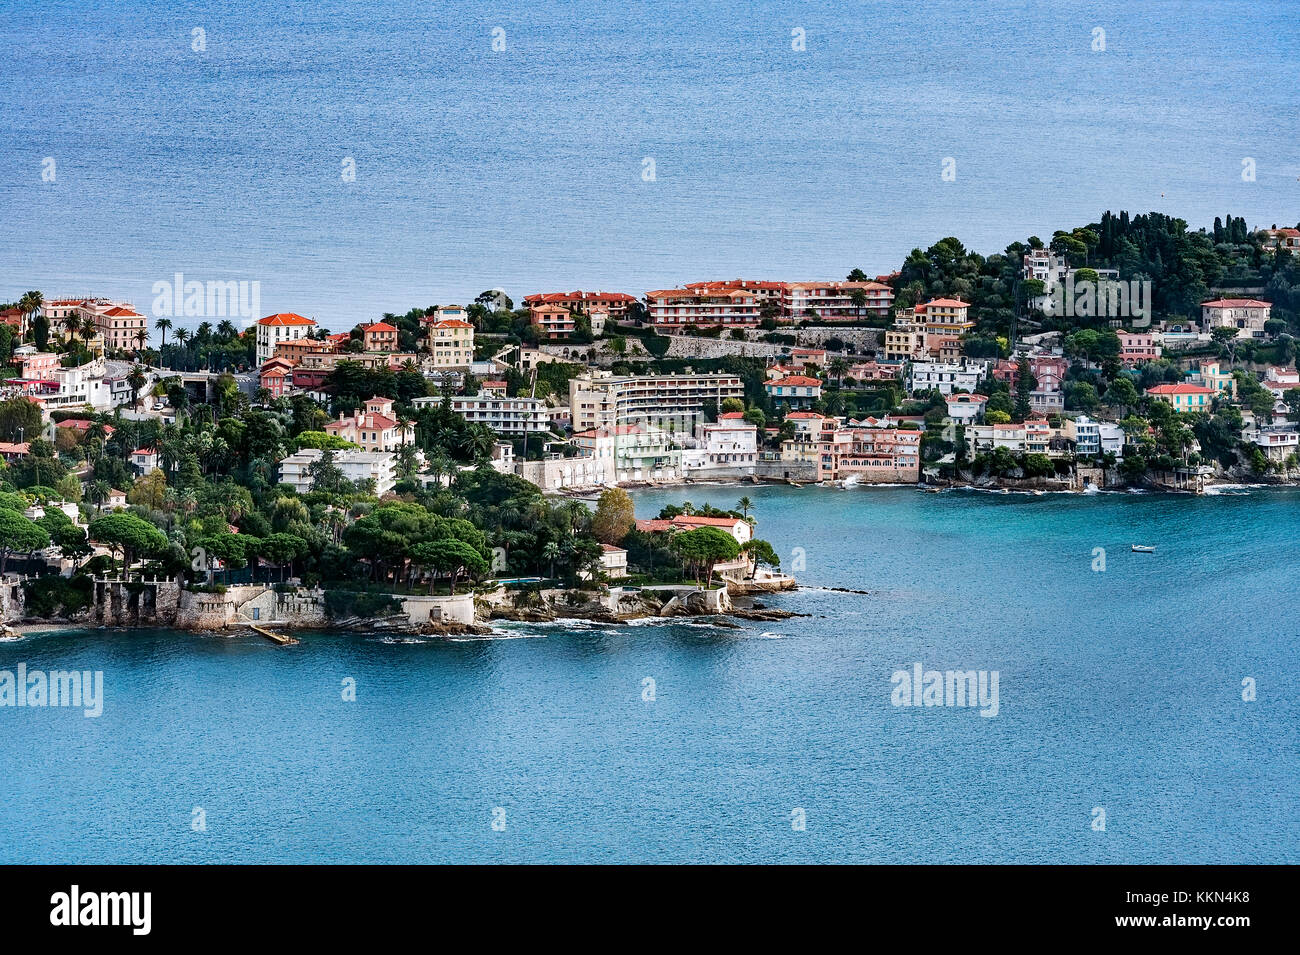 Vue aérienne de la commune de Saint Jean Cap Ferrat, French Riviera, Côte d'Azur, France, Europe. Banque D'Images